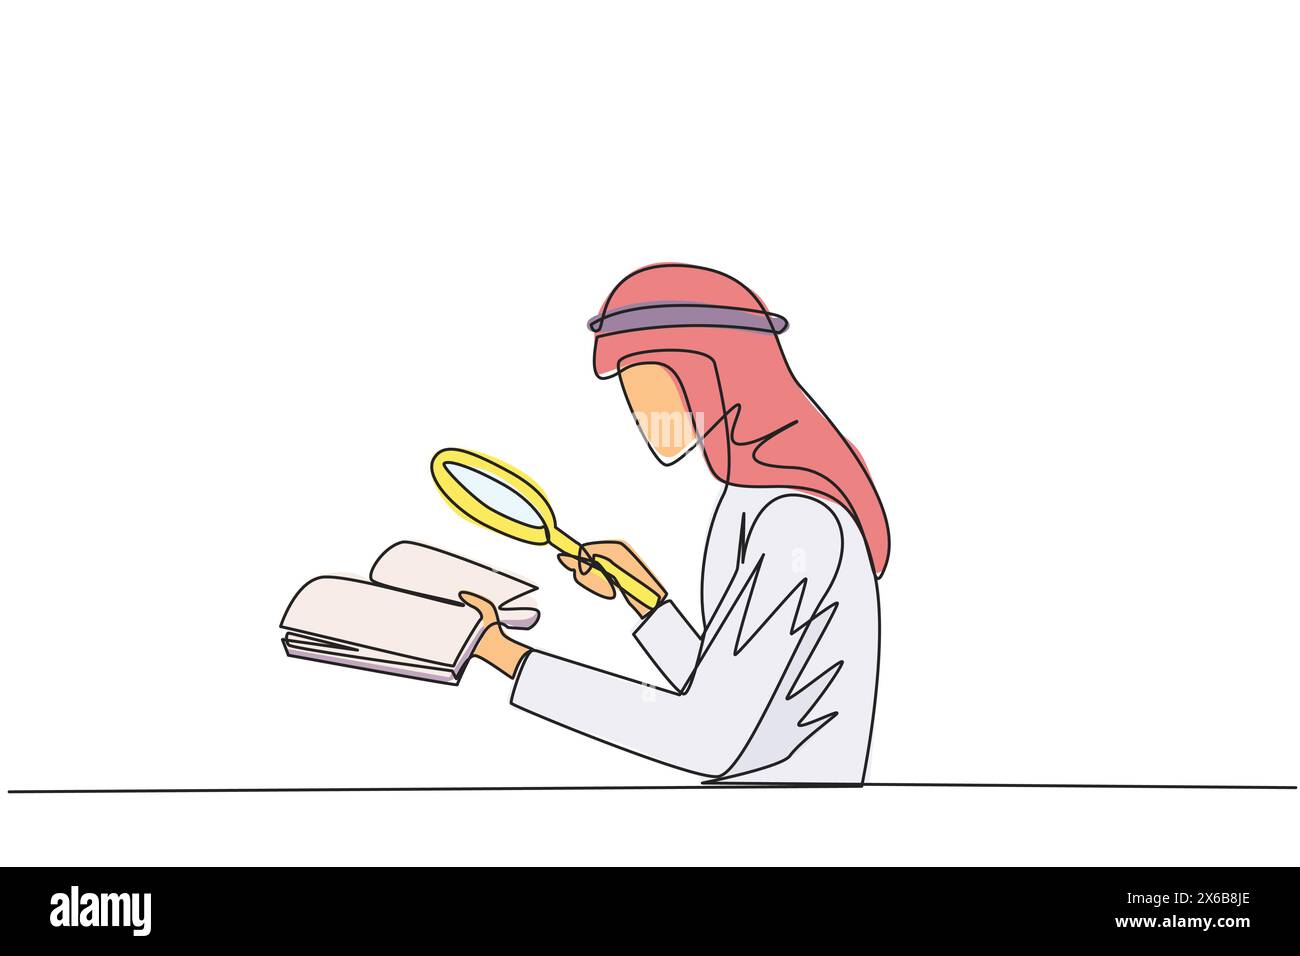 Eine einzeilige Zeichnung ein arabischer Geschäftsmann hält das Buch und untersucht es mit einer Lupe. Geschäftsmann liest wissenschaftliche Studien neu, damit sein Geschäft av Stock Vektor